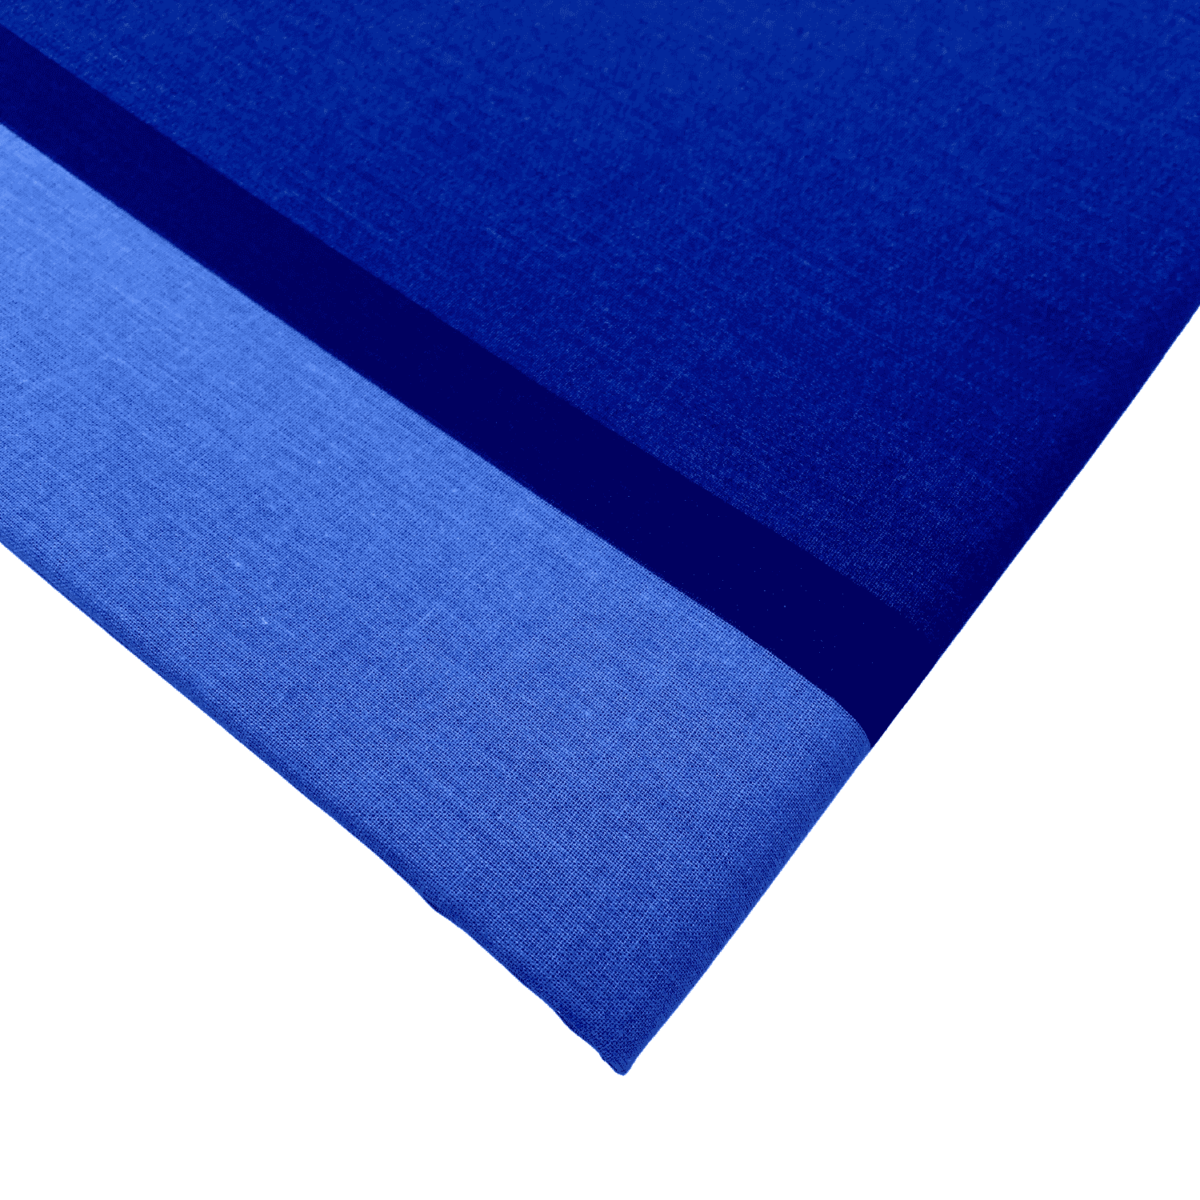 dettaglio-fascia-blu-telo-arredo-copritutto-tuttofare-quadrifoglio-cotone-made-in-italy-1-piazza-180x300cm-2-piazze-260x300cm